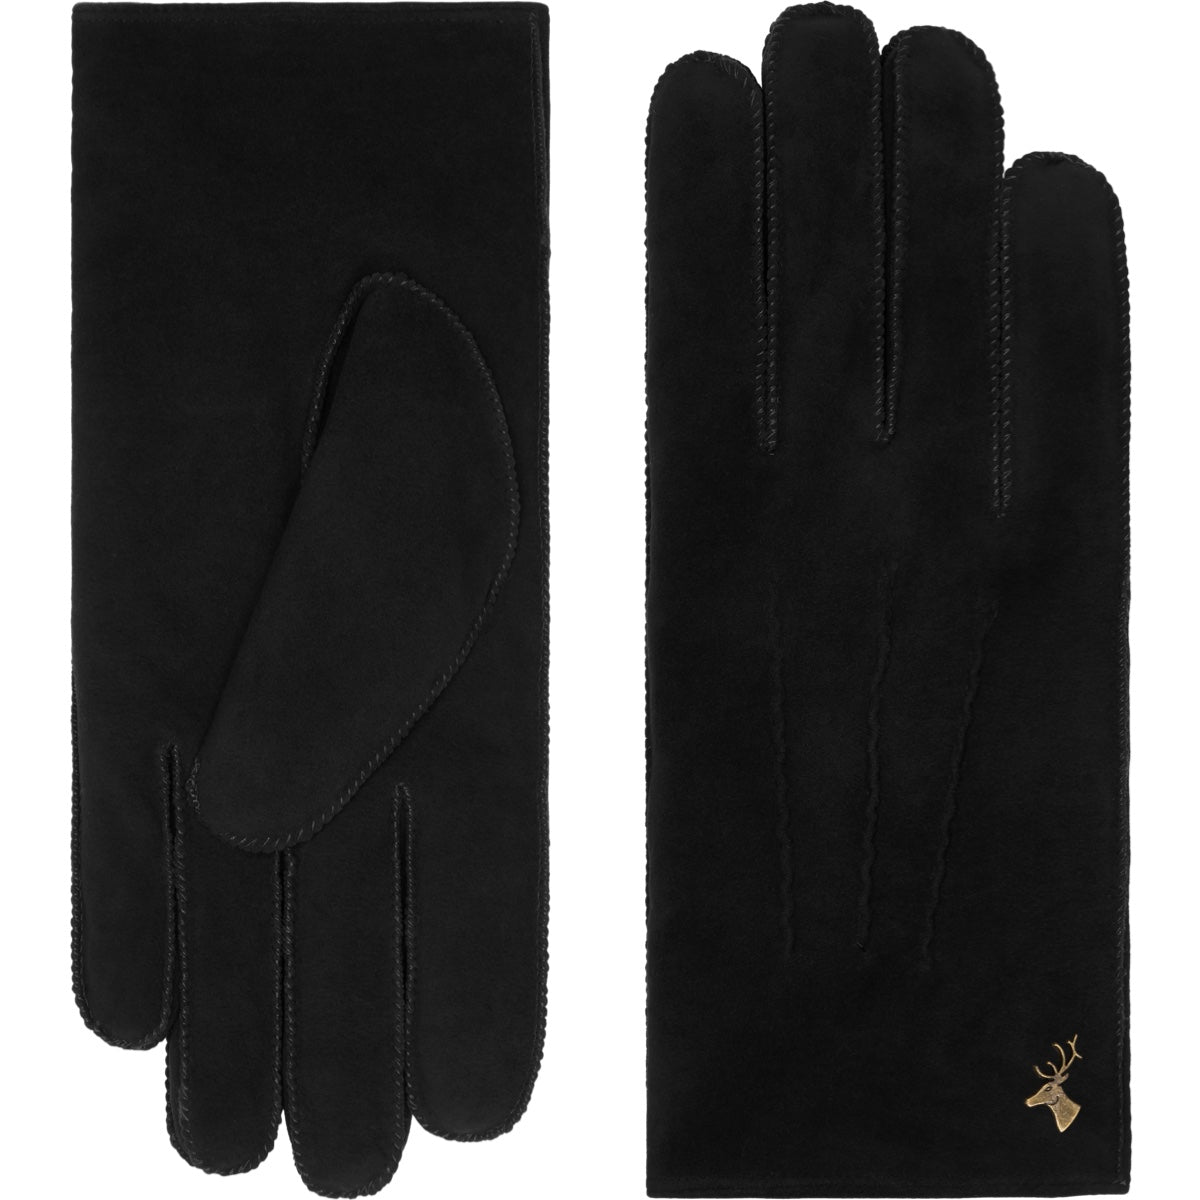 Suede Leather Gloves Black Matthew - Schwartz & von Halen® - Premium Leather Gloves - 2